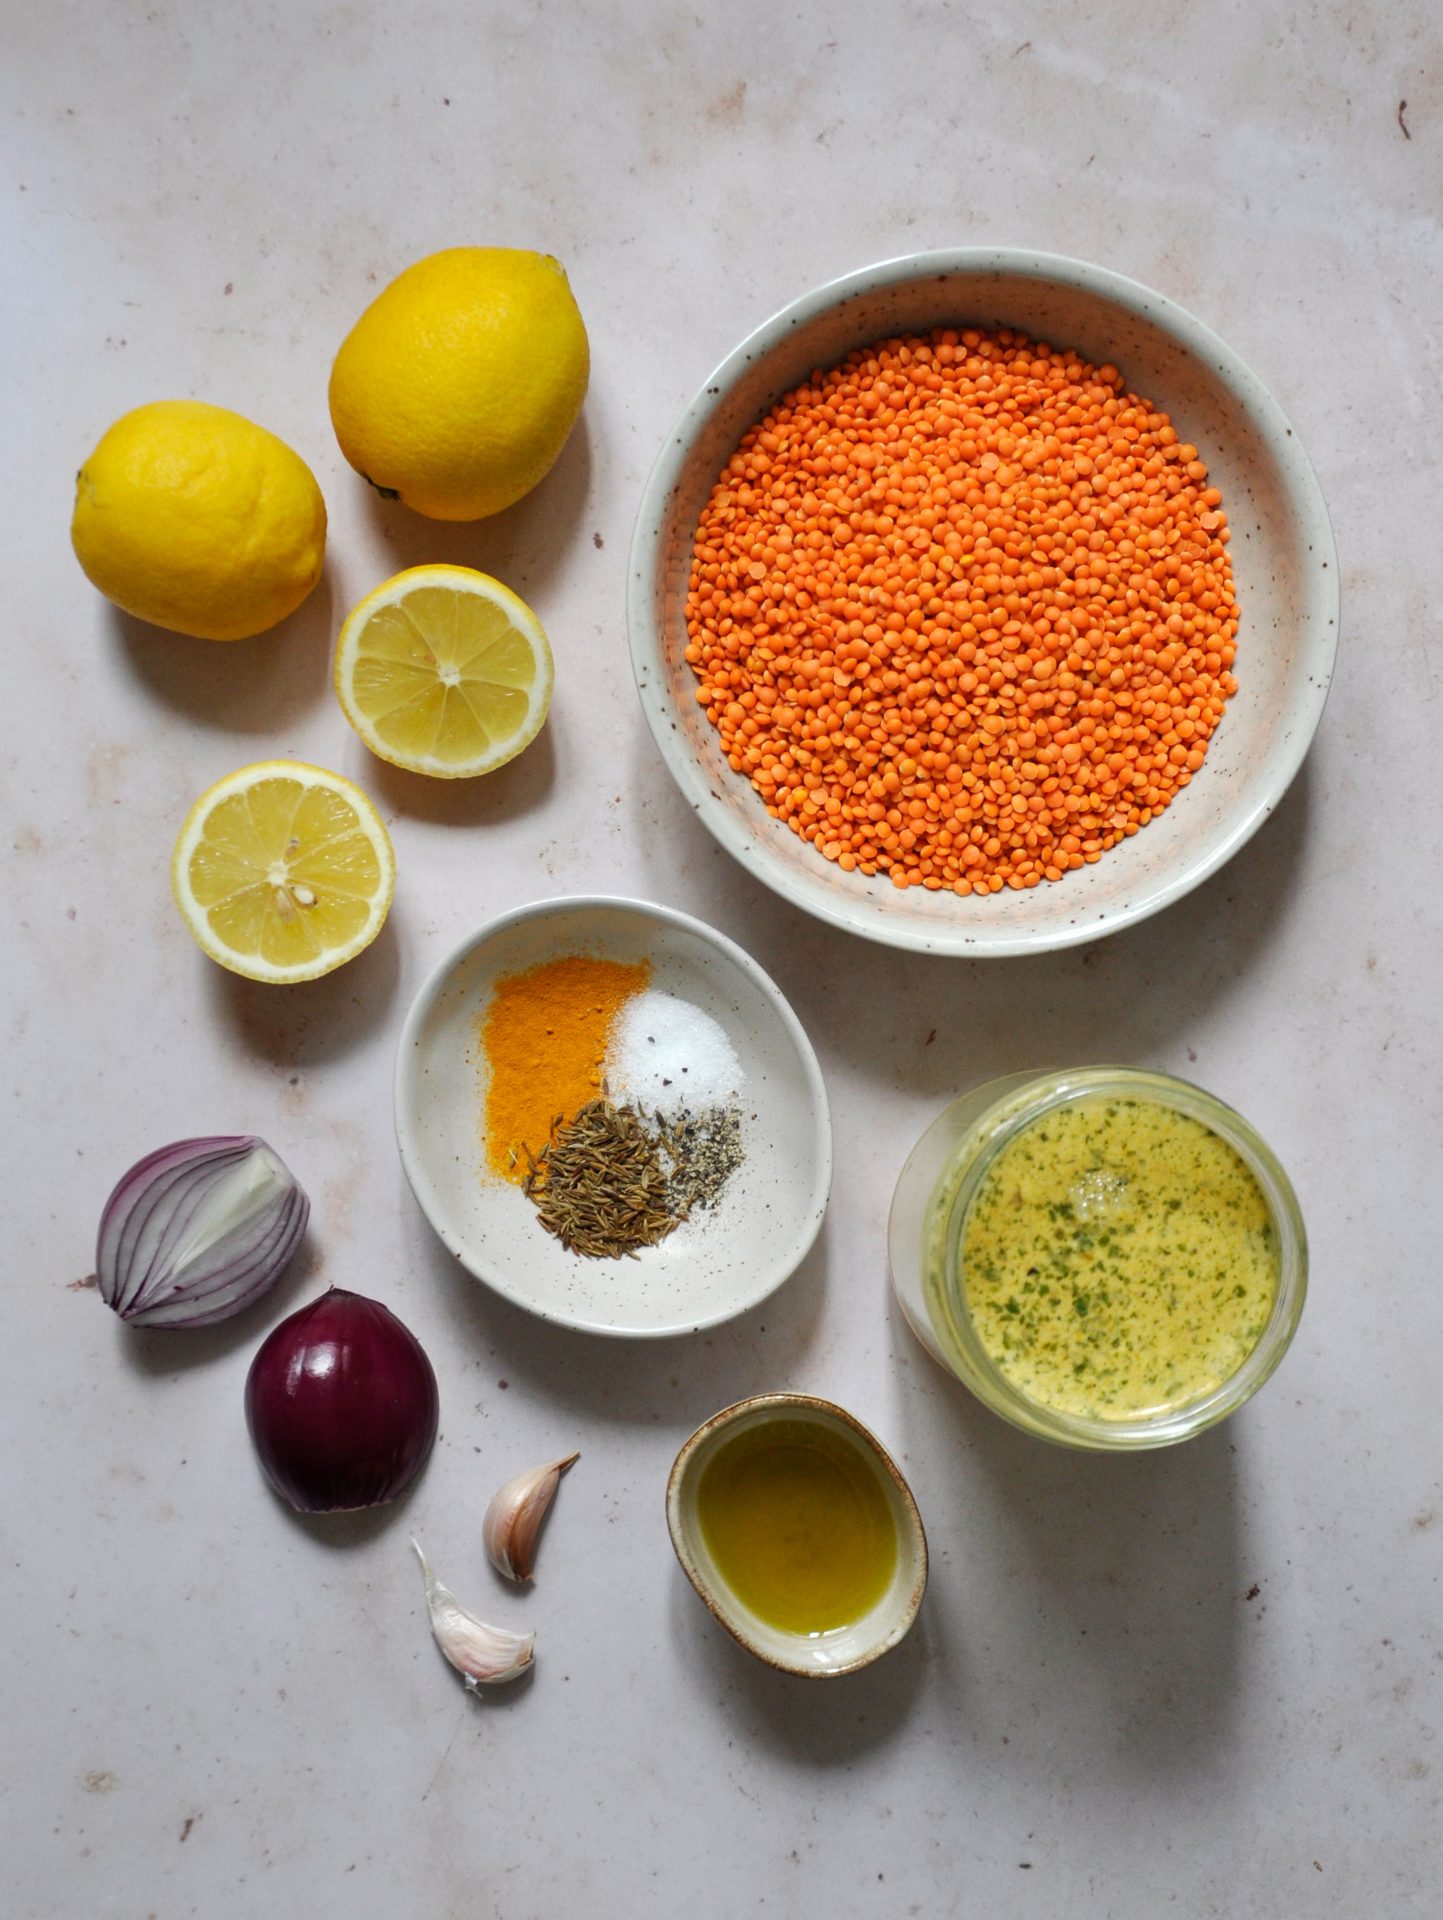 Auf dem Bild zu sehen sind die Zutaten für die vegane Zitronen-Linsen Suppe, rote Linsen, rote Zwiebeln, Knoblauch, Gewürze, Zitrone und Gemüsebrühe, auf einer Mamorplatte.